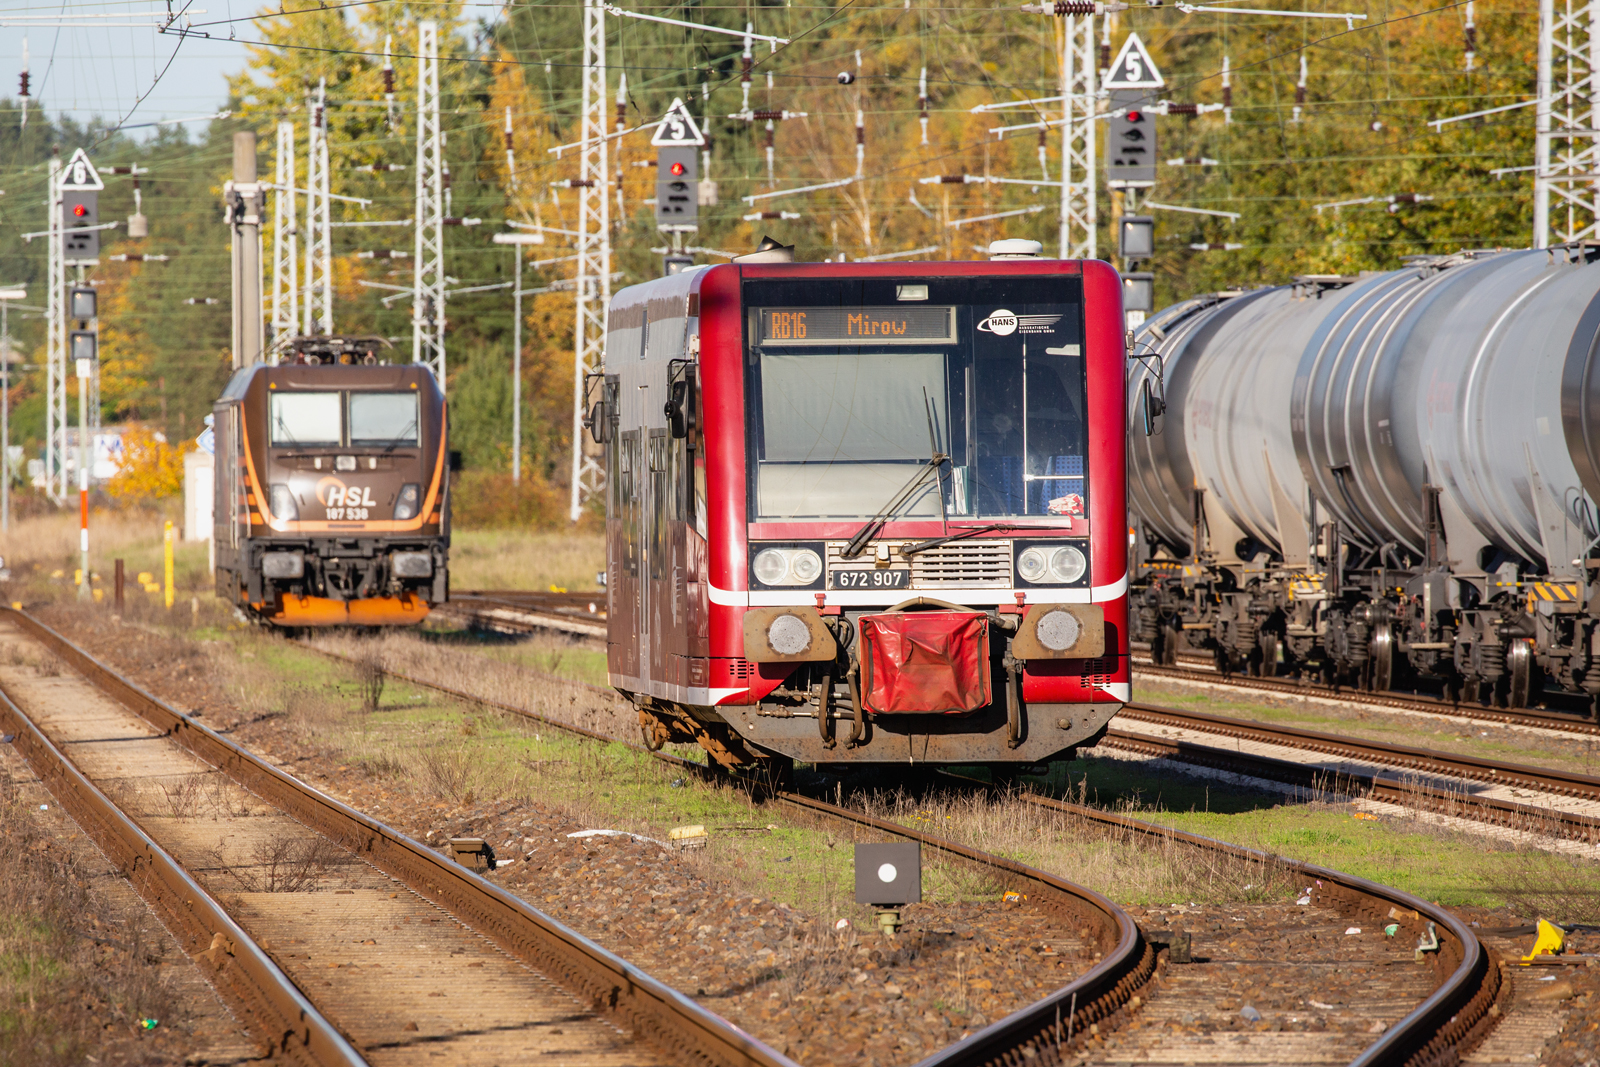 Hanseatische Eisenbahn mit Triebwagen 672 907 wurde in Neustrelitz vom Bahnsteig weggesetzt und steht nun vor der Gleissperre, die in kürze aufgelegt wird. - 26.10.2022
